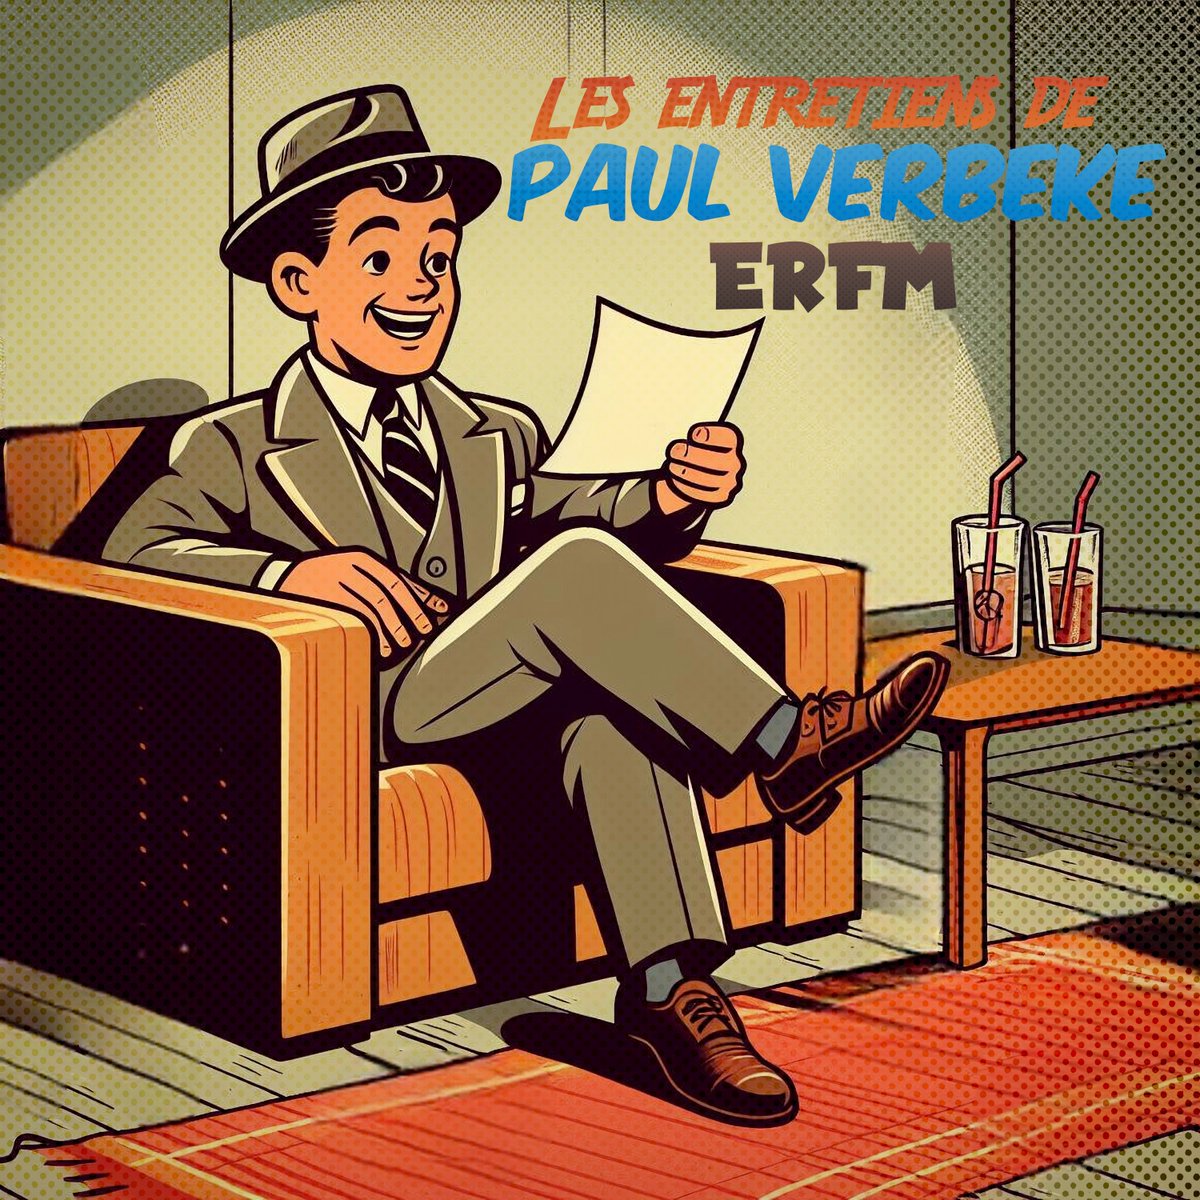 Venez écouter la dernière émission d'ERFM :  
• Les entretiens de Paul Verbeke 
tinyurl.com/3jnddrap